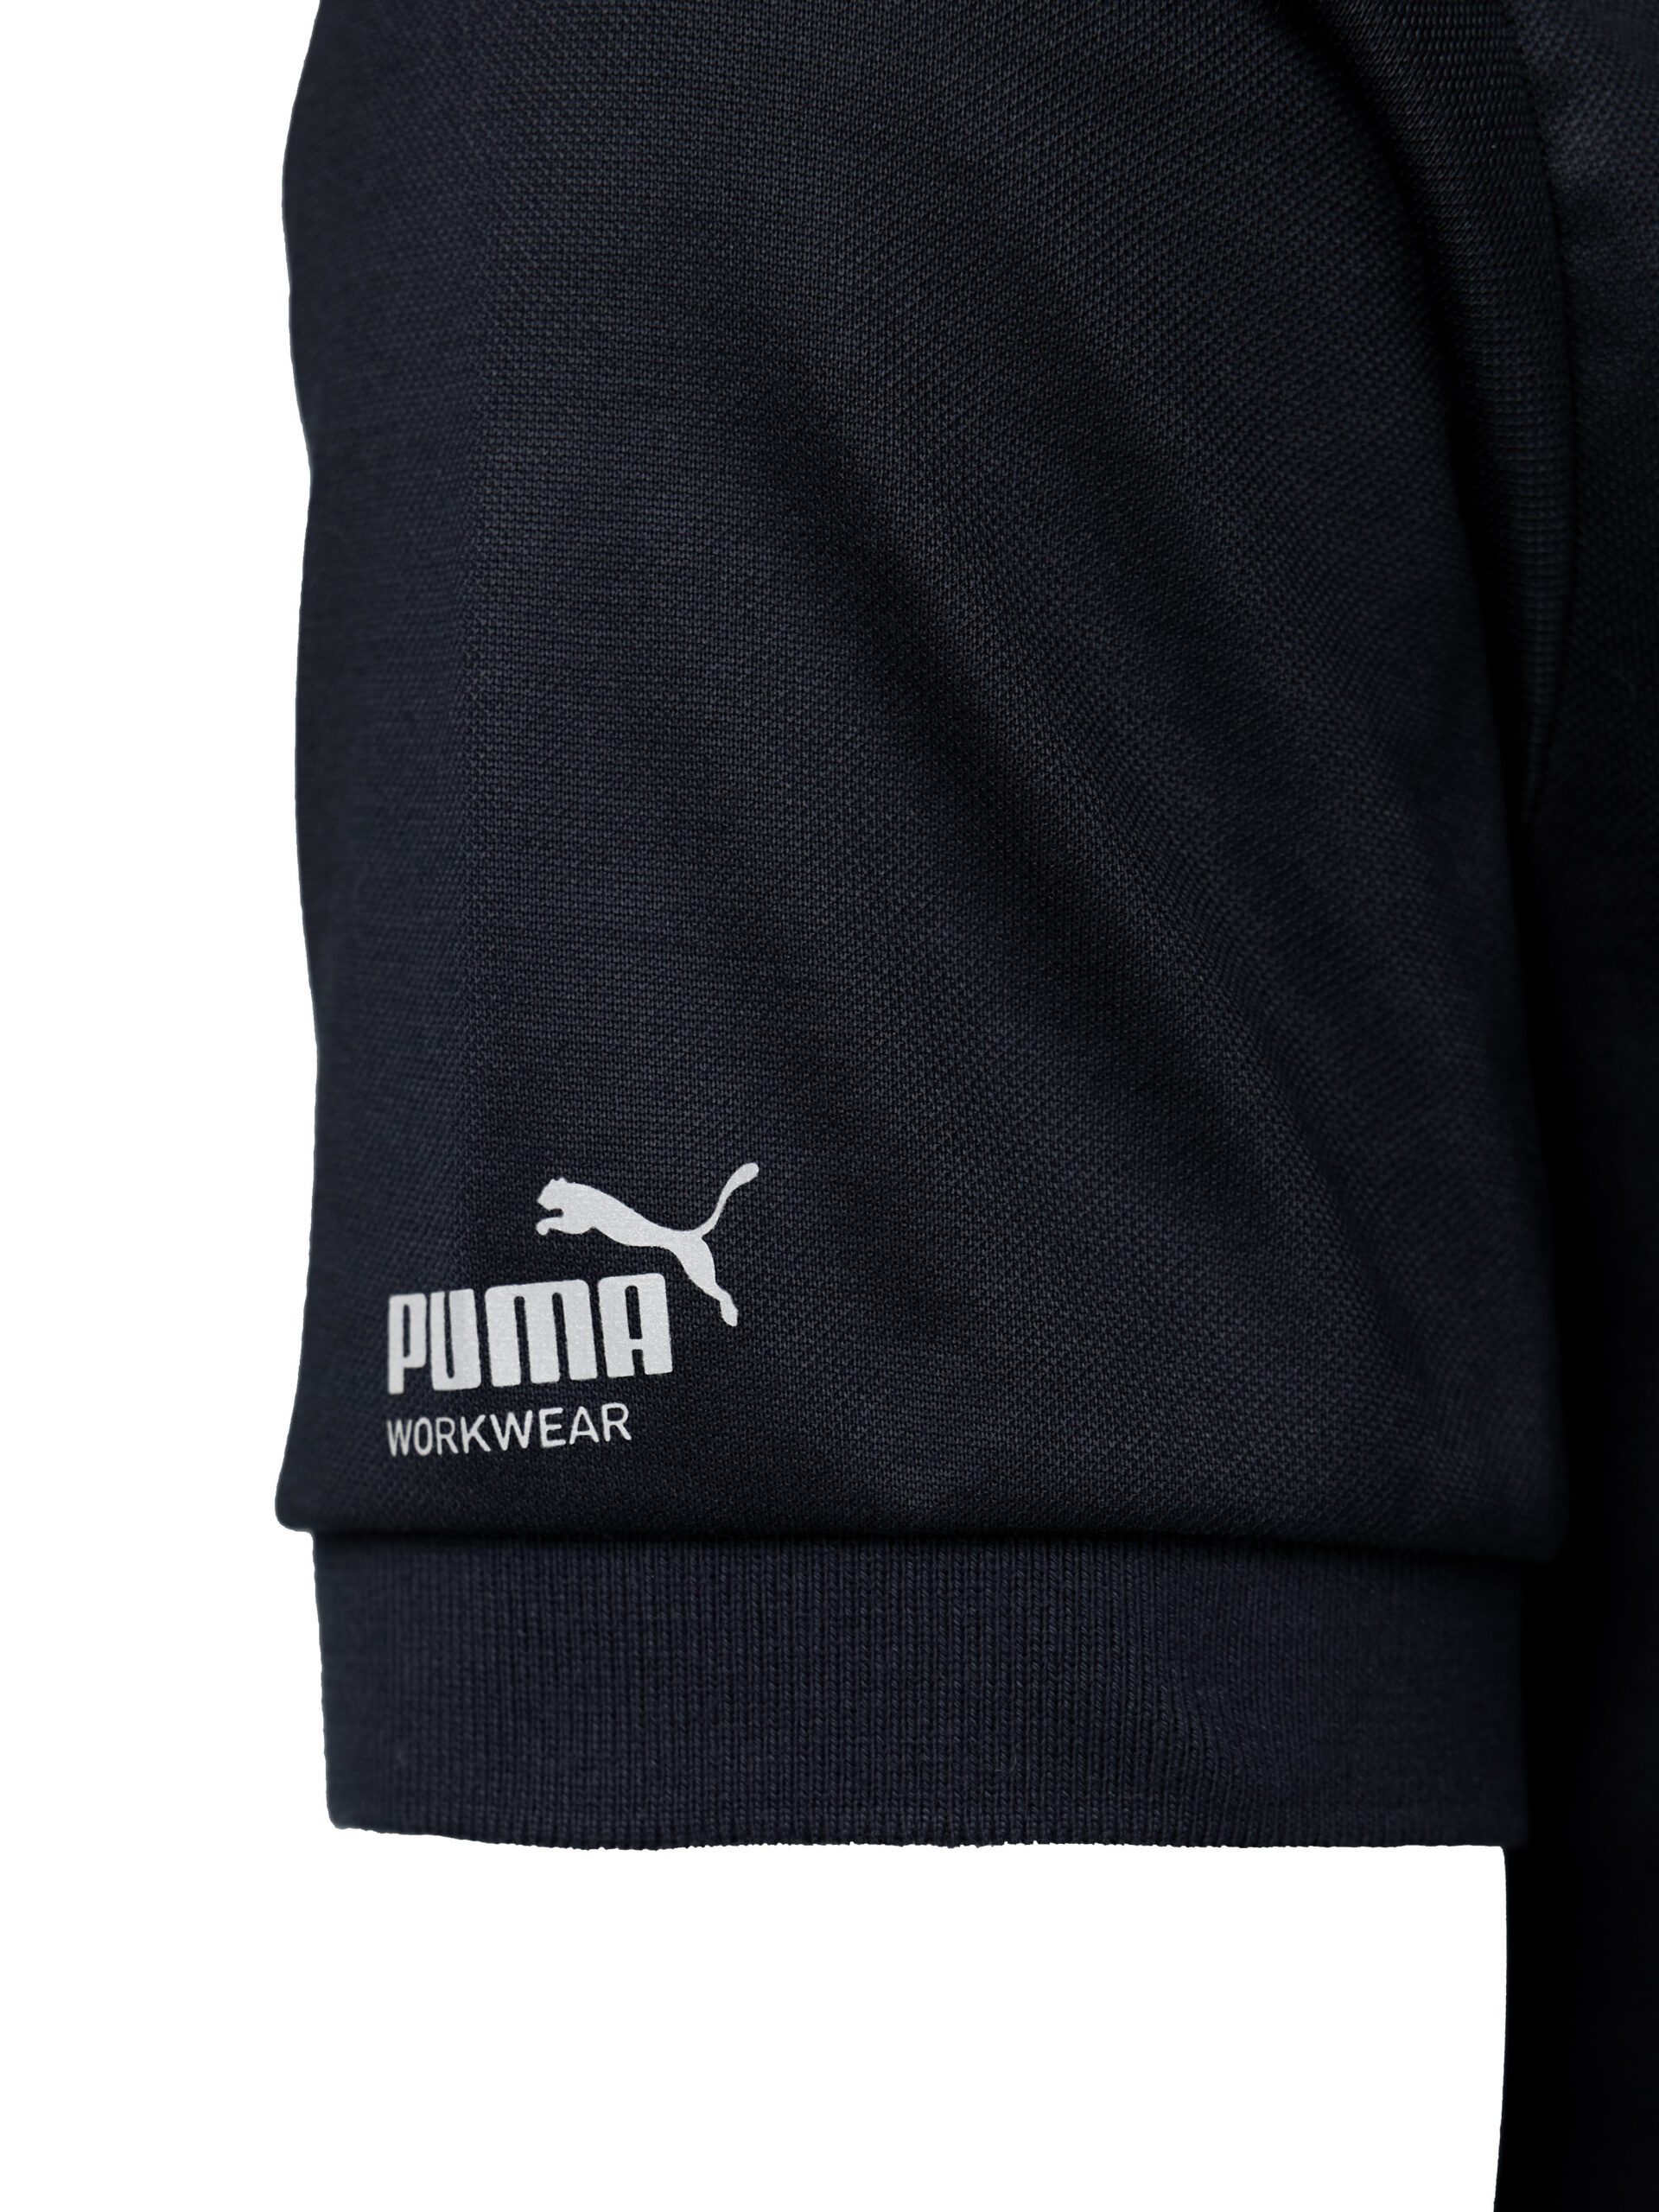 PUMA Polo Workwear Workwear Essentials | PUMA Shirt Men\'s